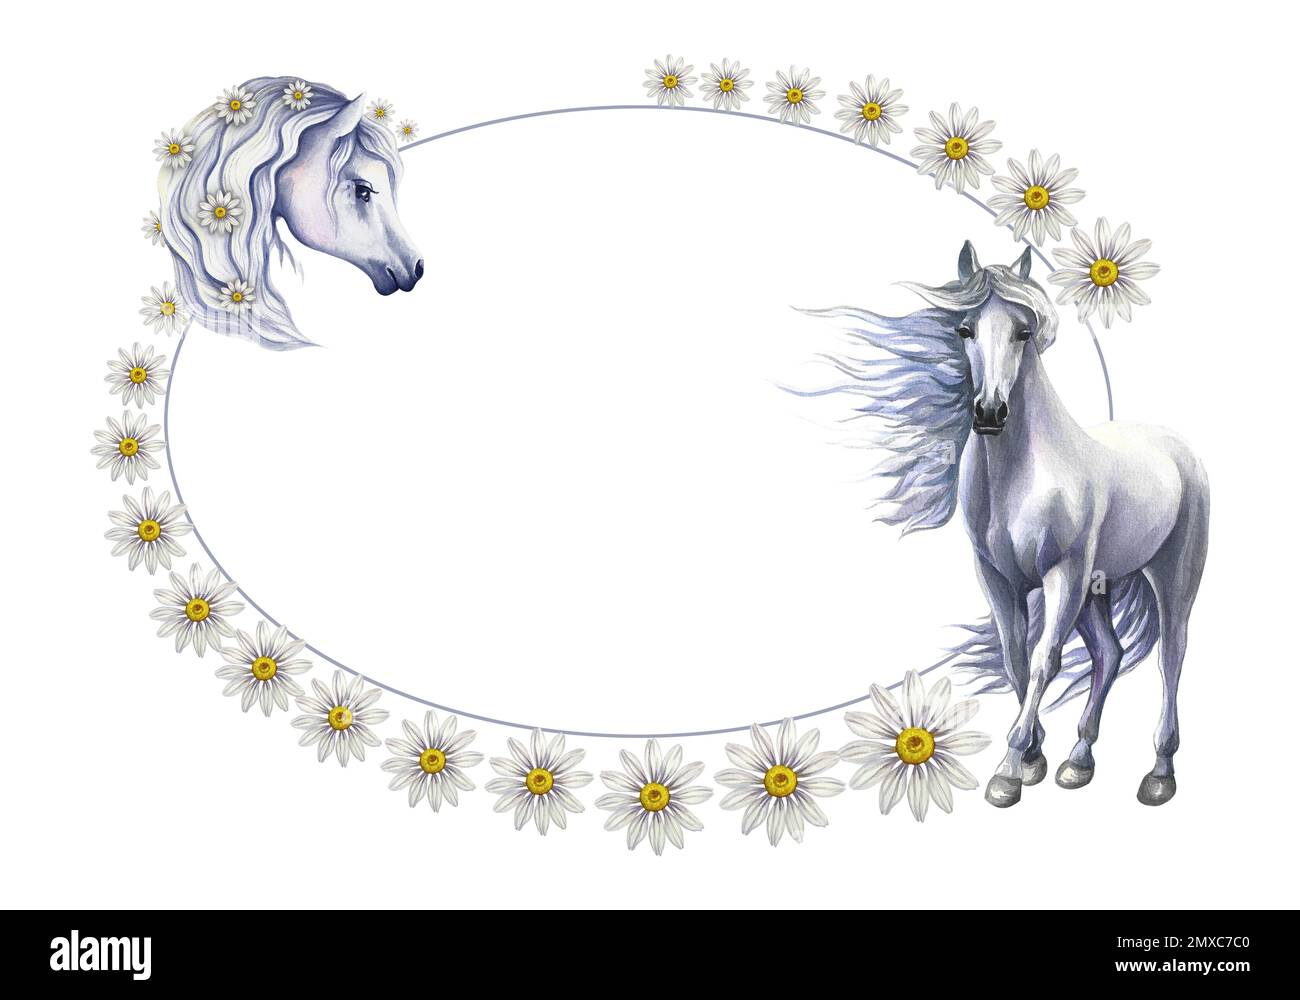 Rahmen für eine Inschrift mit weißen Pferden, dekoriert mit Gänseblümchen. Aquarell, handgefertigt. Zum Drucken, Aufklebern und Etiketten. Für Postkarten, geschäftlich ca. Stockfoto